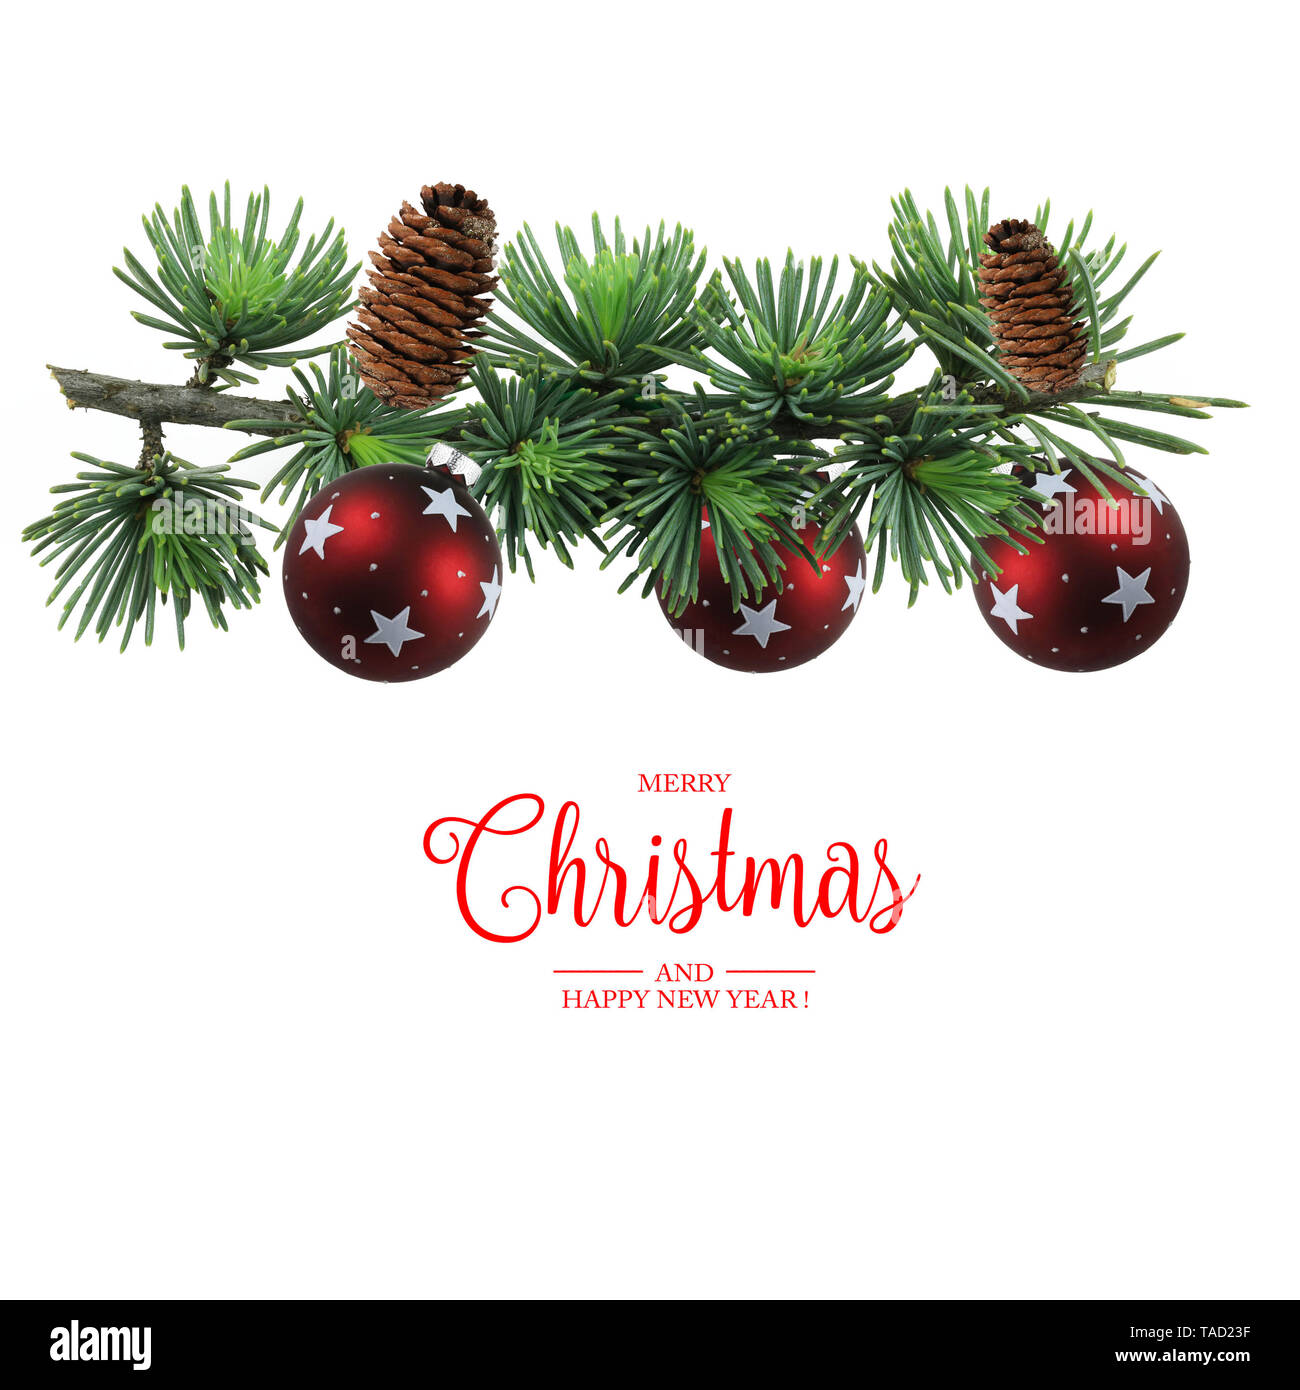 Joyeux Noël carte de voeux. Vue de dessus de décorations de Noël et Joyeux Noël texte italien sur fond blanc Banque D'Images